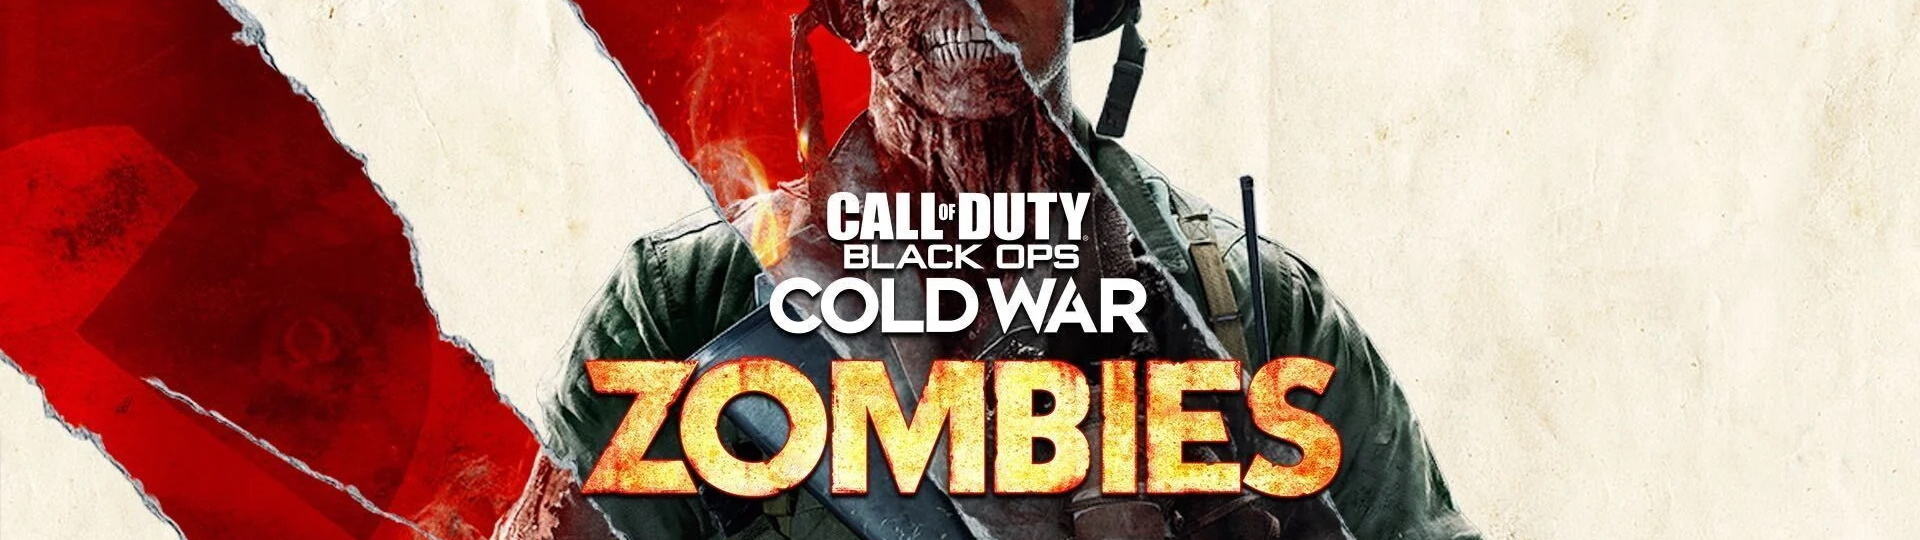 PlayStation bude mít dočasnou exkluzivitu zombie koopu v Call of Duty: Cold War | Novinky